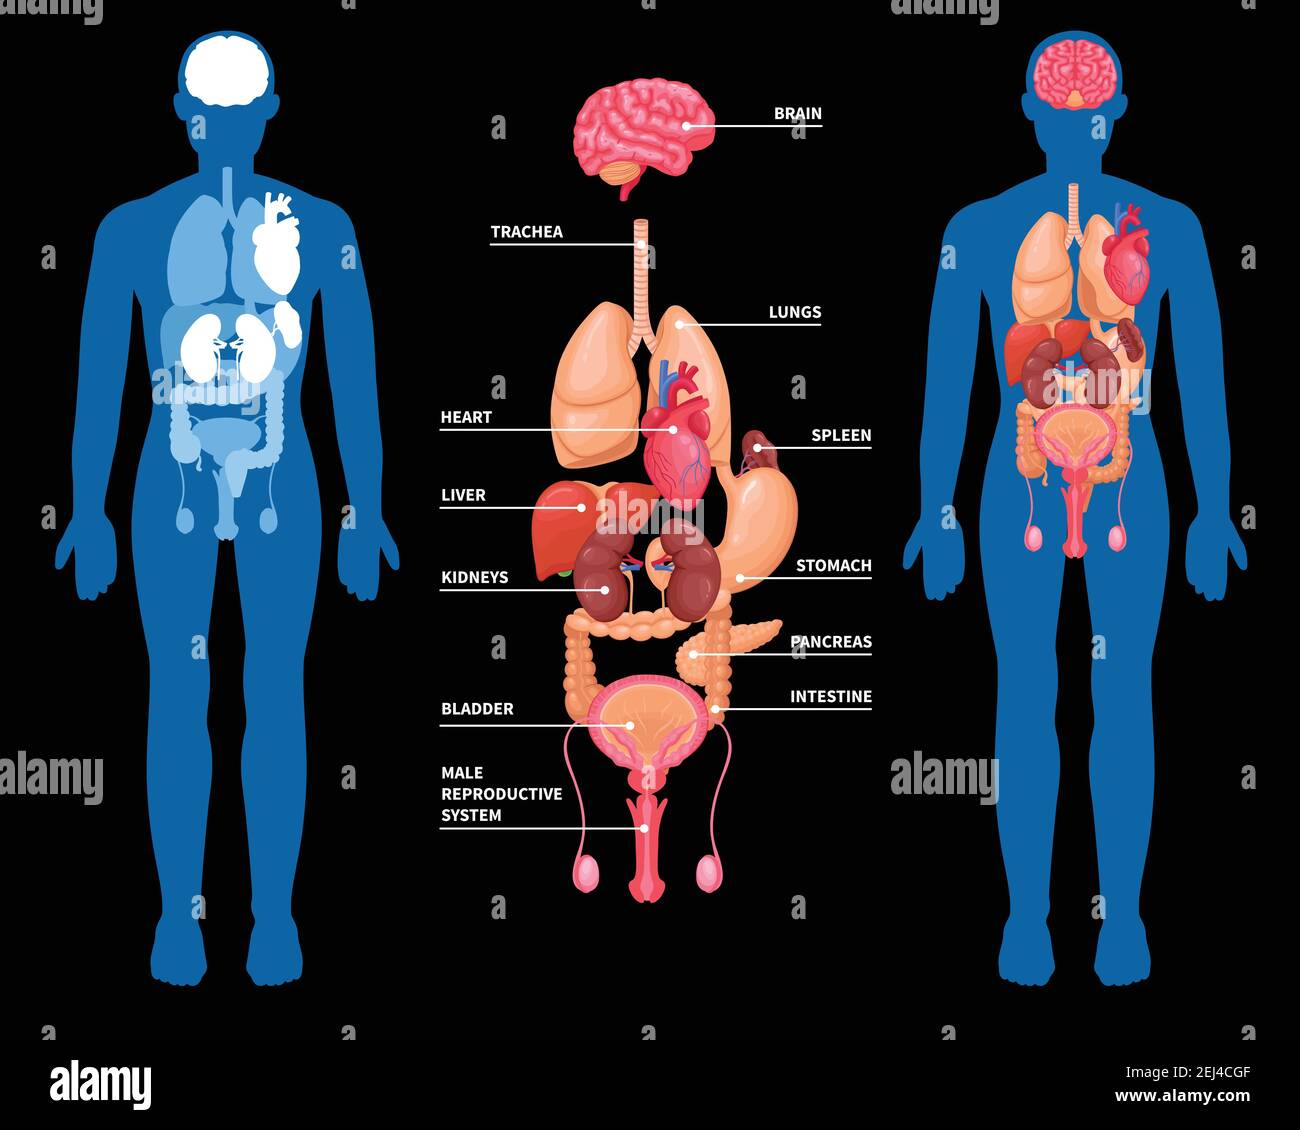 Menschliche Anatomie Layout der inneren Organe im männlichen Körper isoliert Vektorgrafik auf schwarzem Hintergrund Stock Vektor